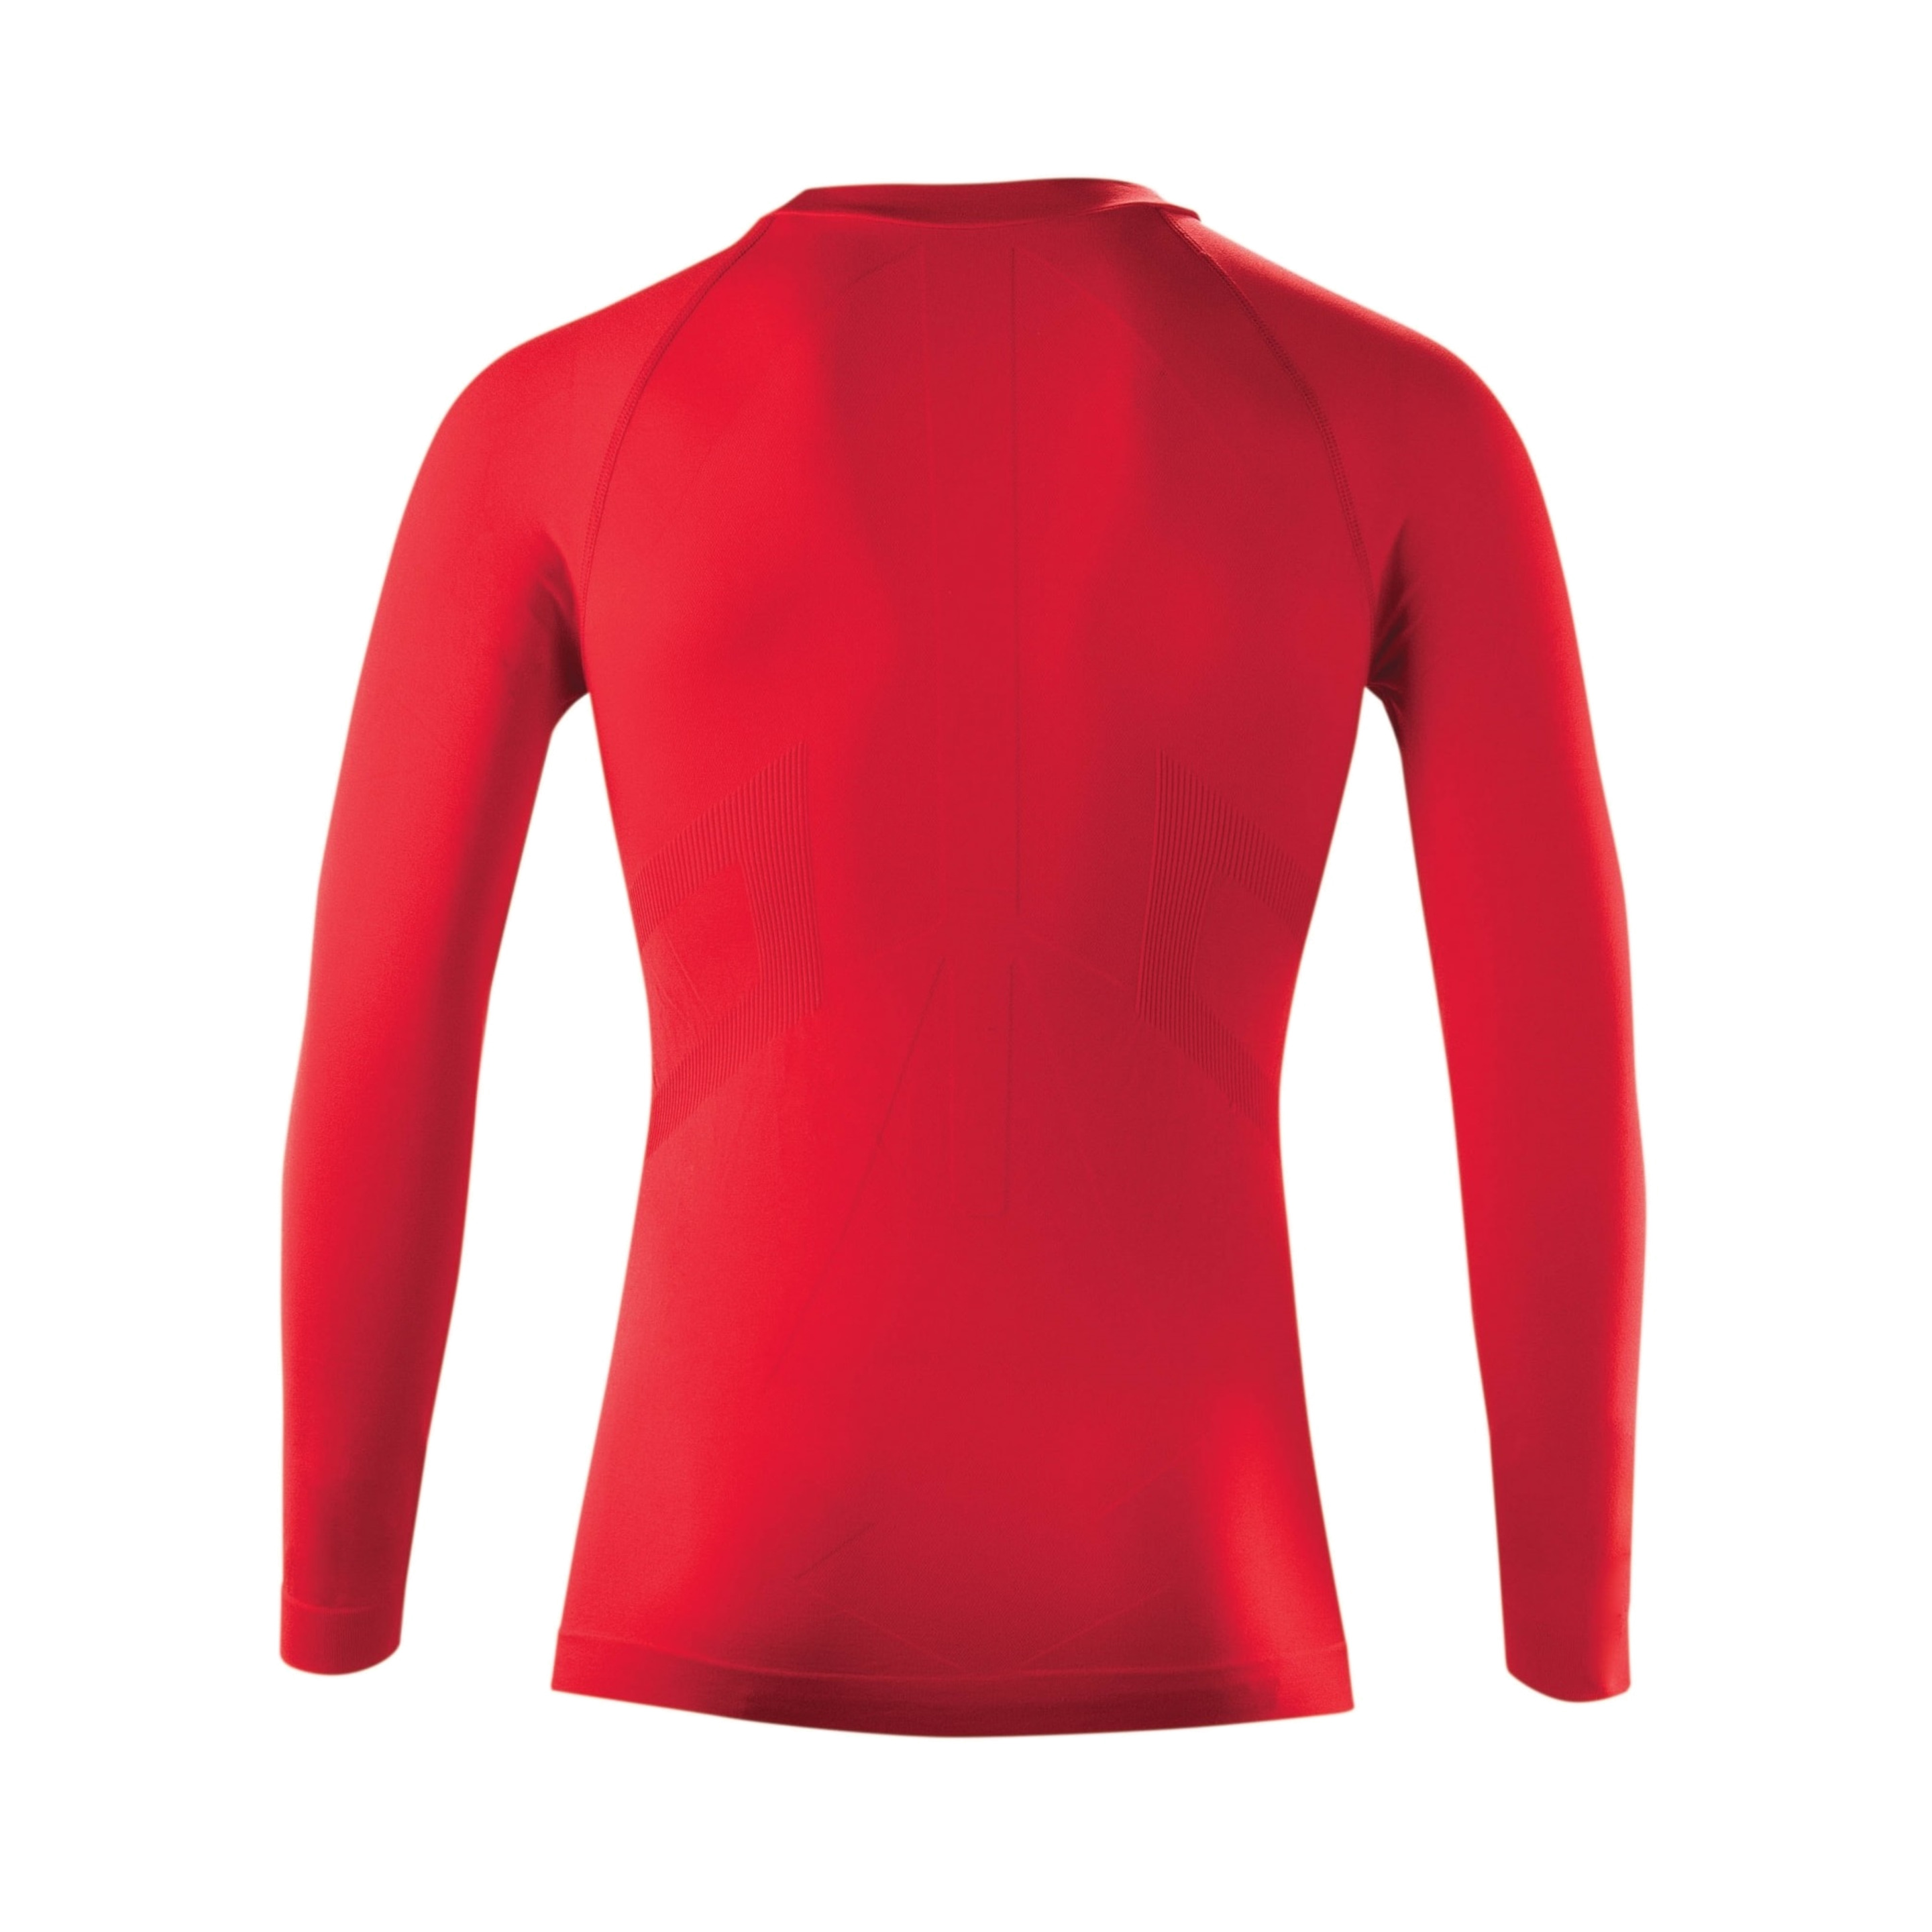 Camiseta Acerbis Interior Intimo - Rojo - Camiseta Acerbis Interior Intimo  MKP